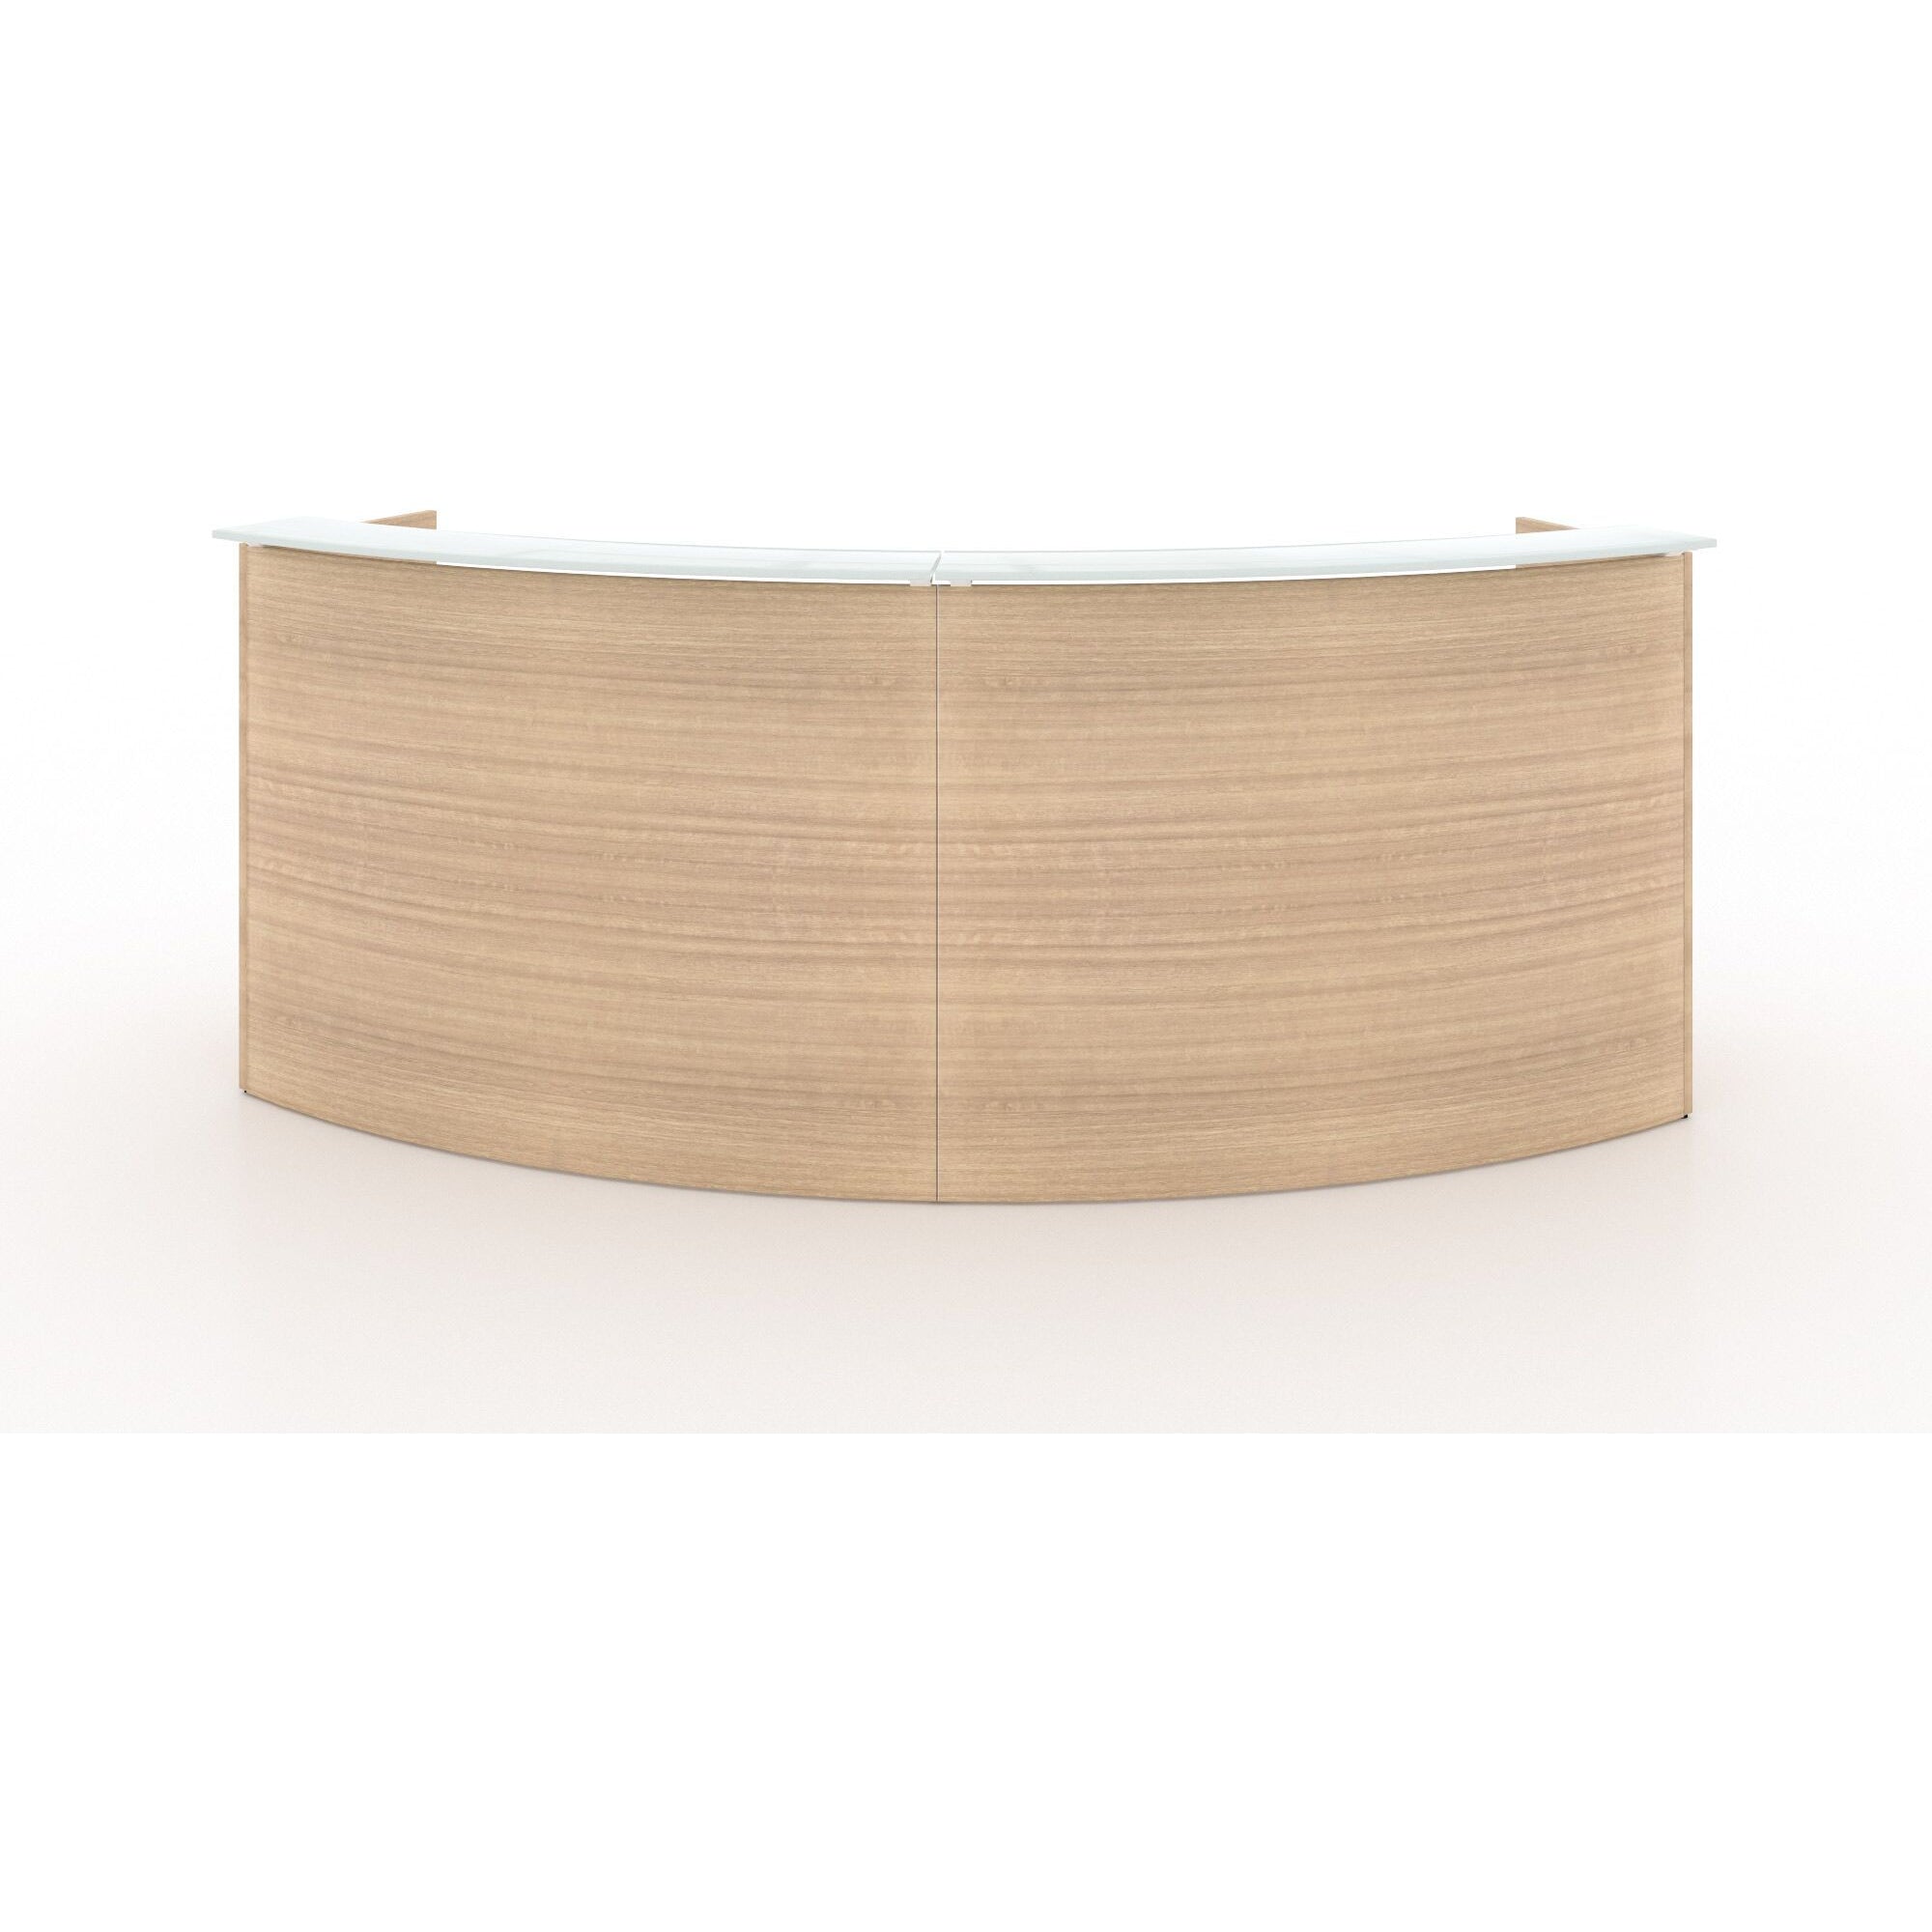 Chiarezza Curved Reception Desk with White Glass Counter Top